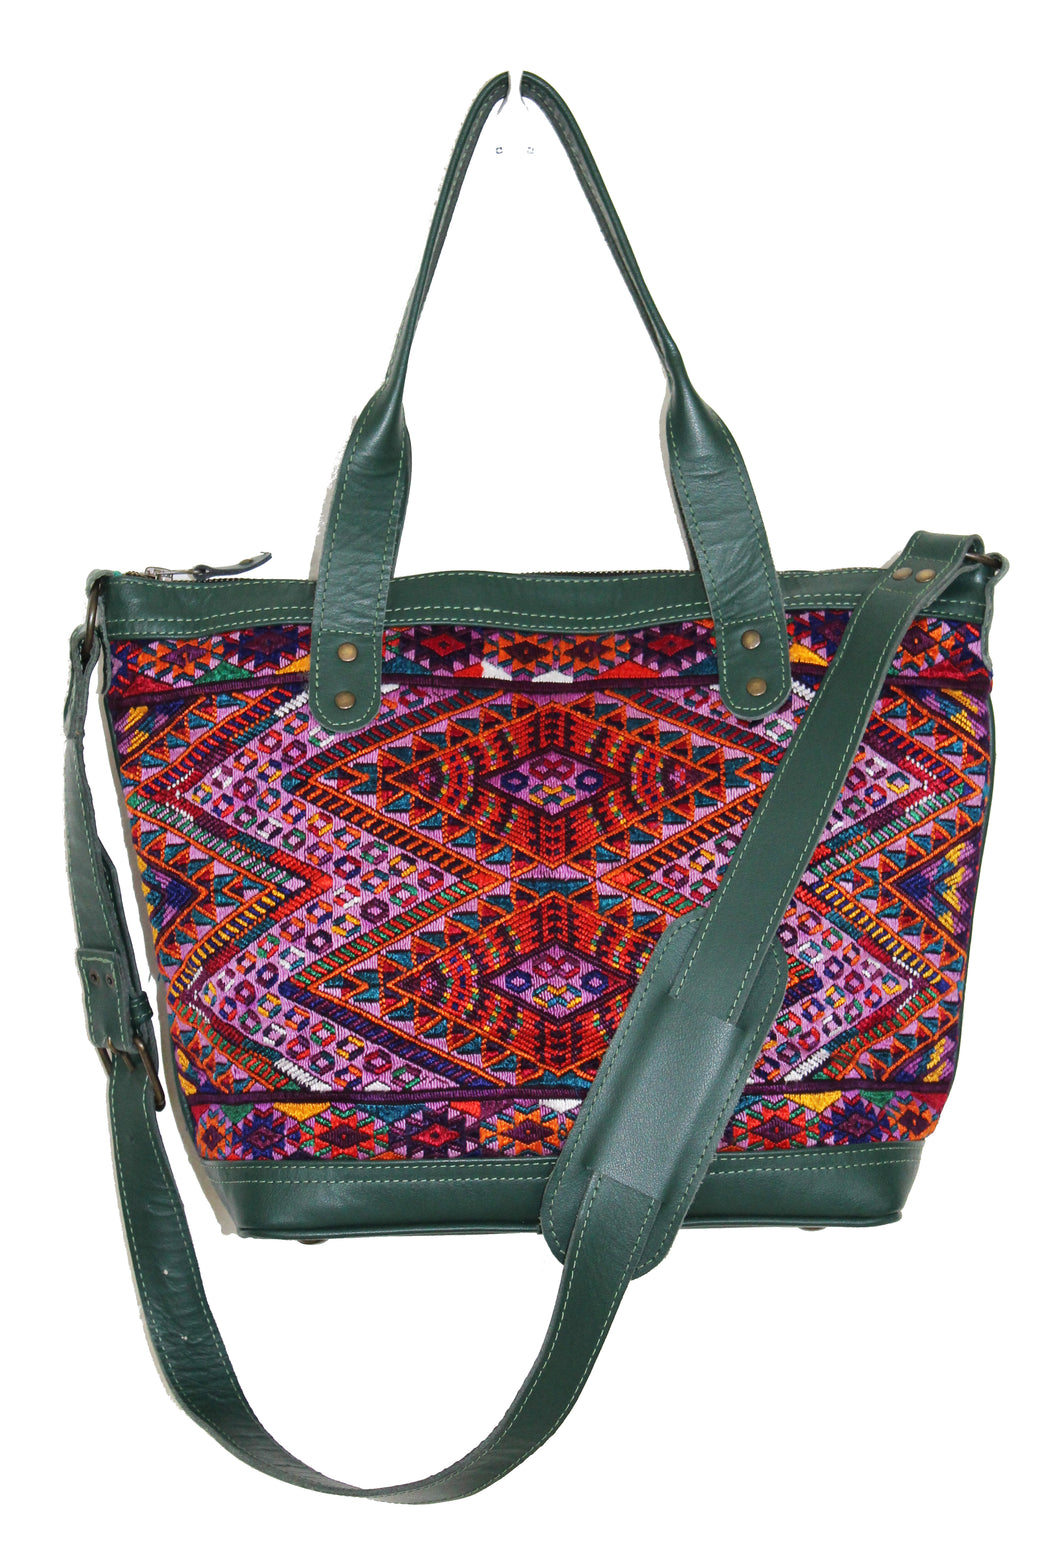 MoonLake Design Renata medium crossbody bag in dark green leather and captivating geometric huipil